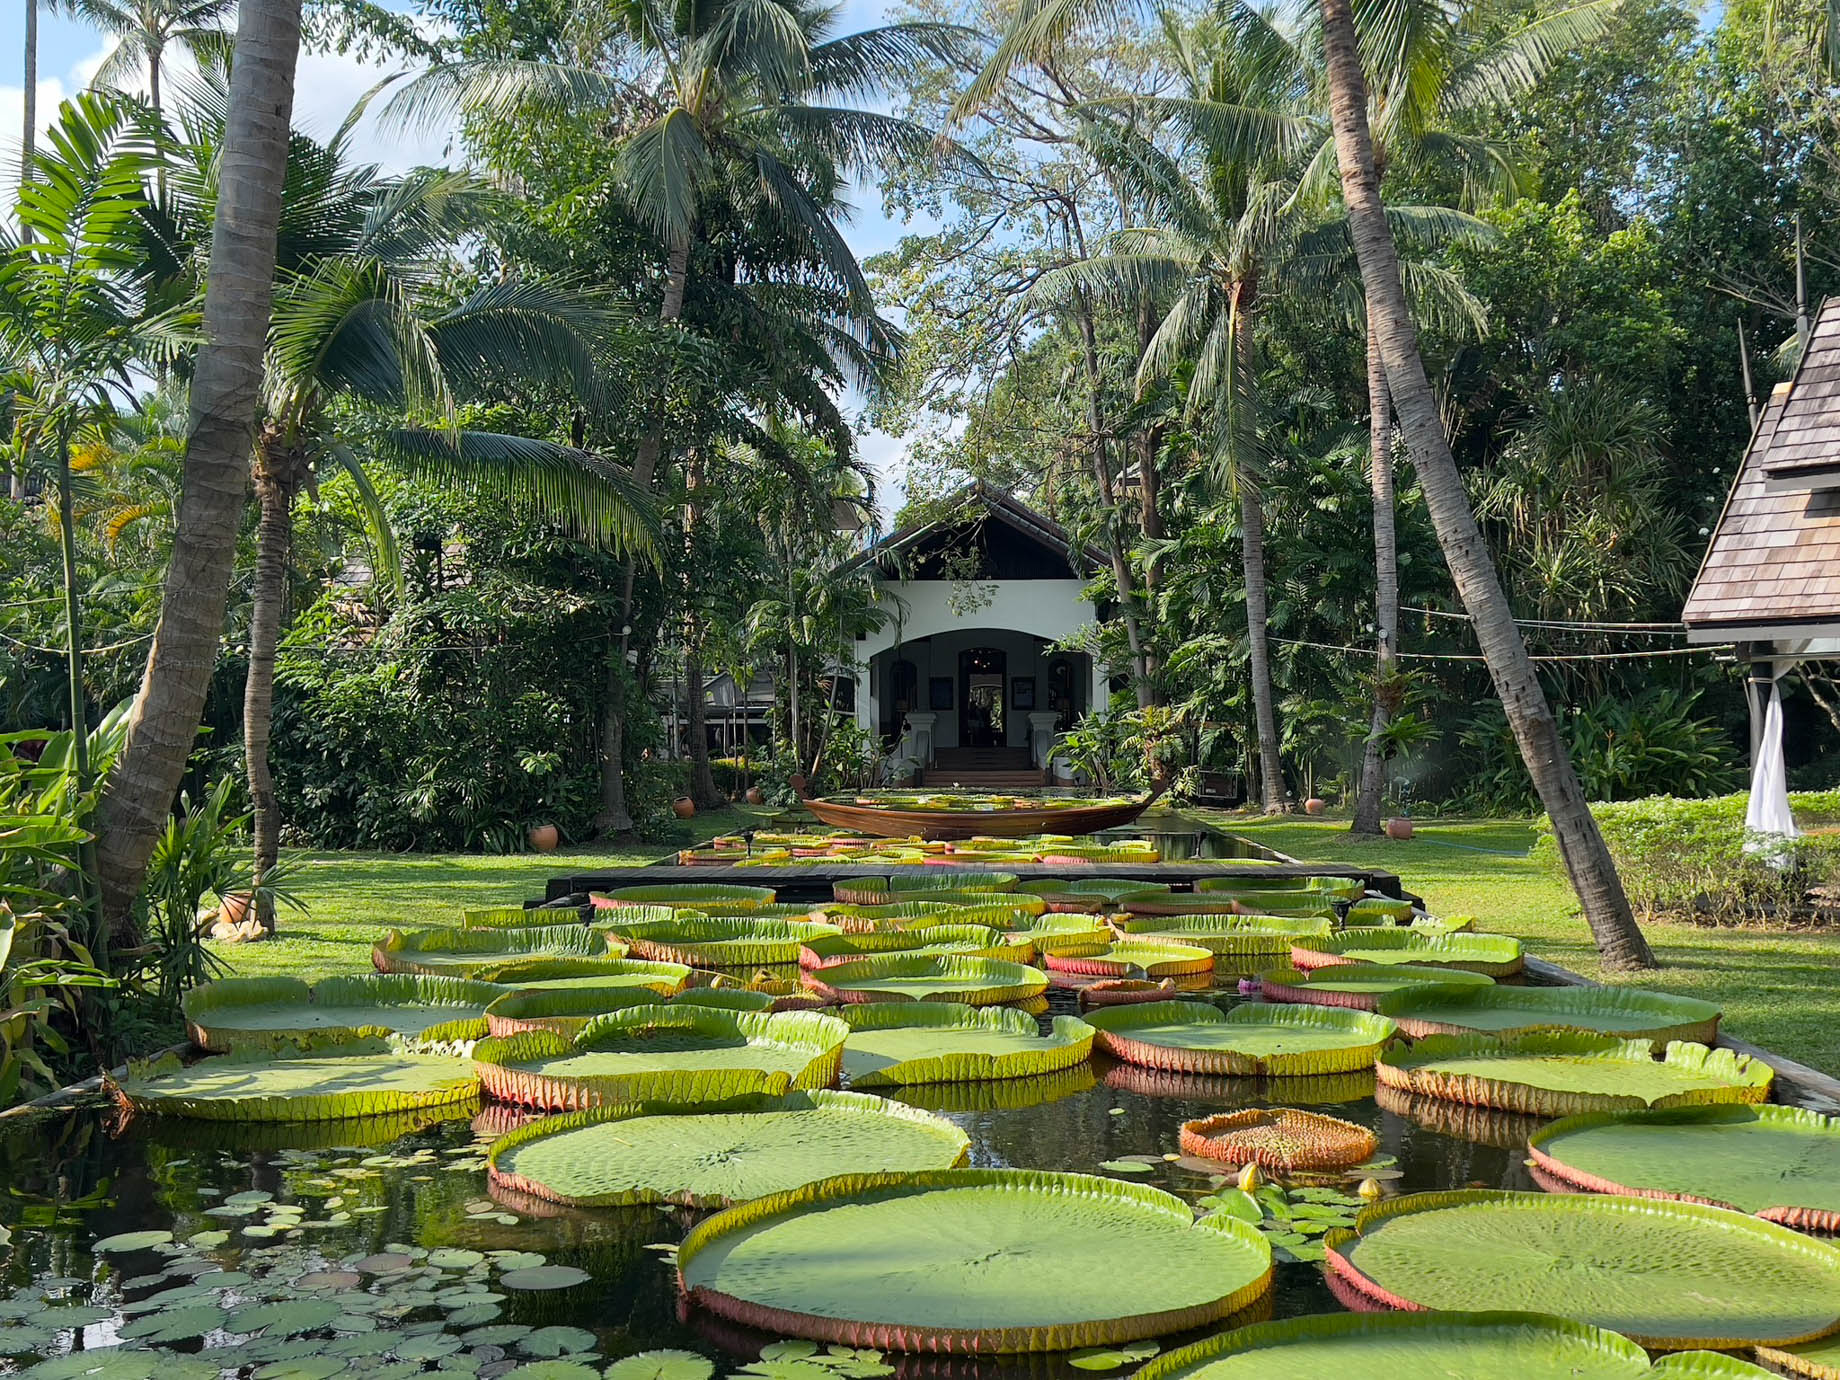 Anantara Bophut Koh Samui Resort – Thailand – Lotus Pond